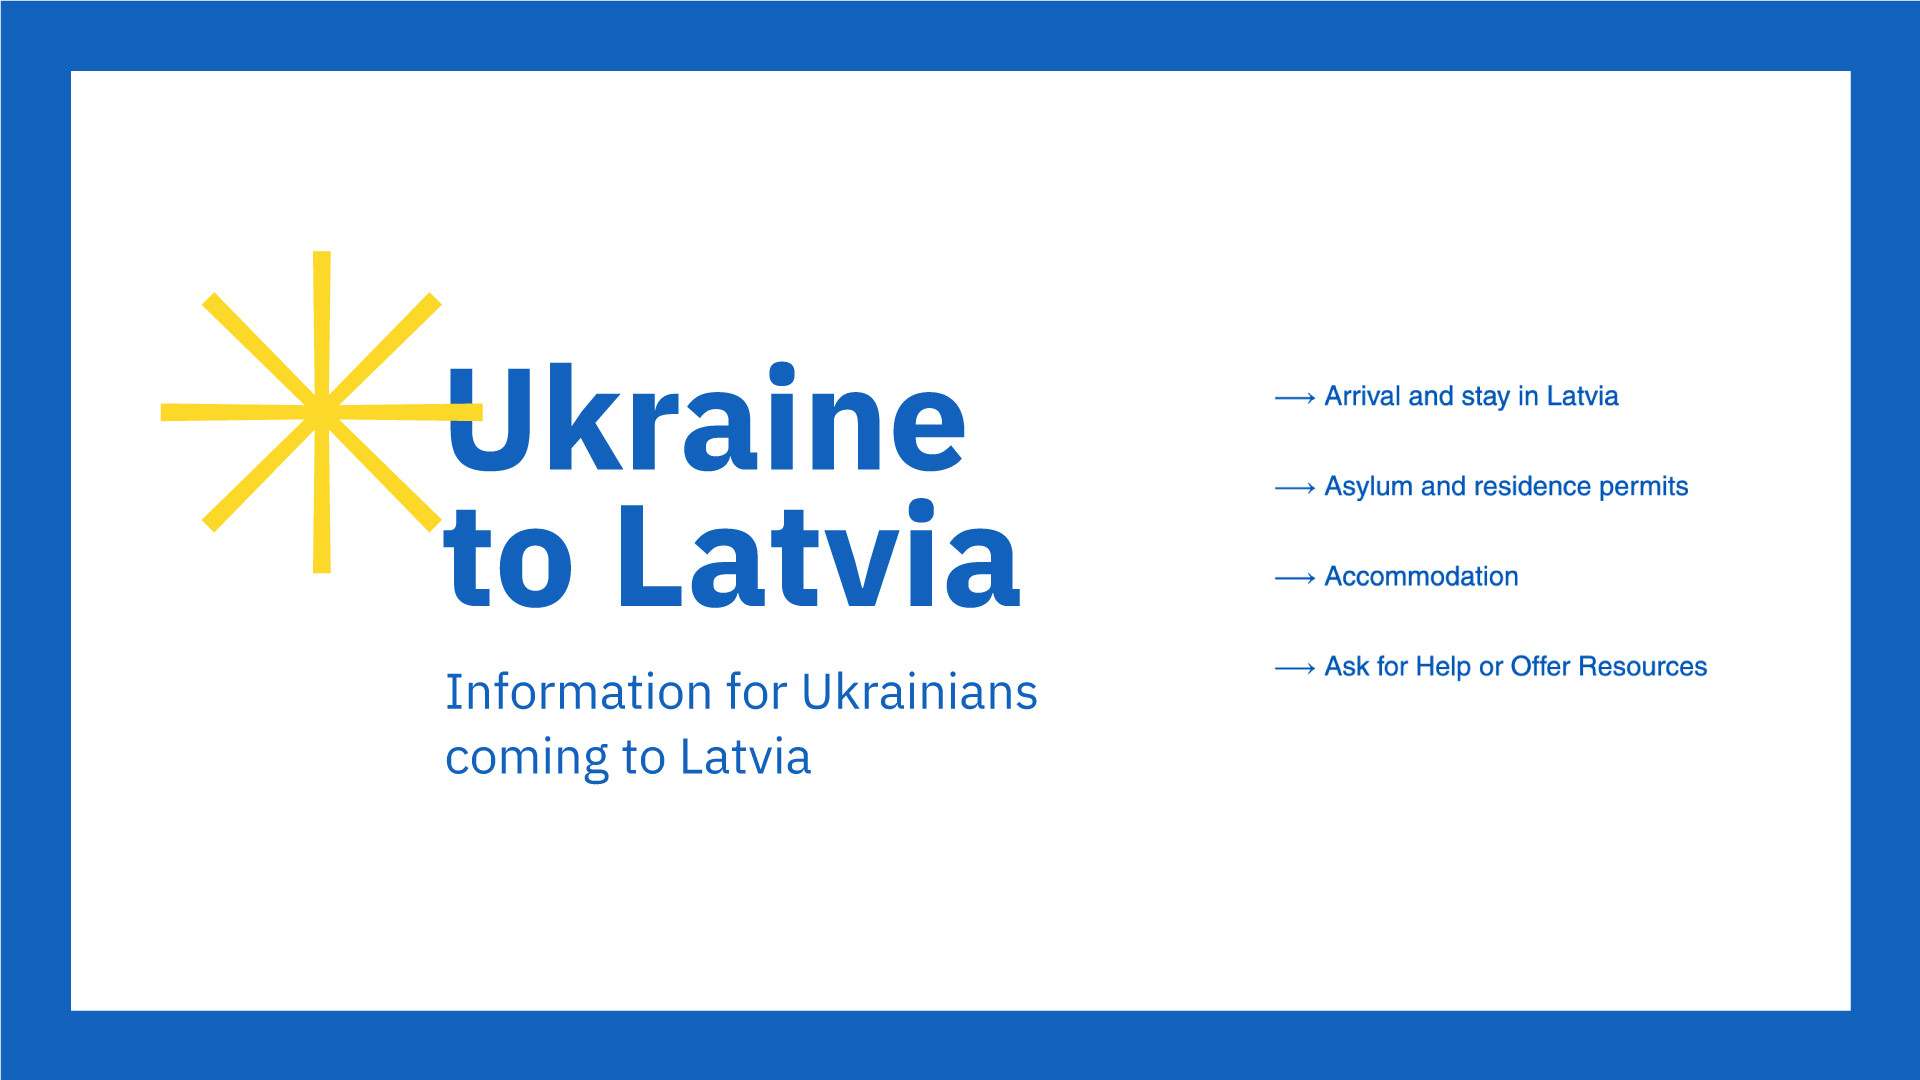 Ko mēs varam darīt interneta frontē, lai palīdzētu Ukrainai?